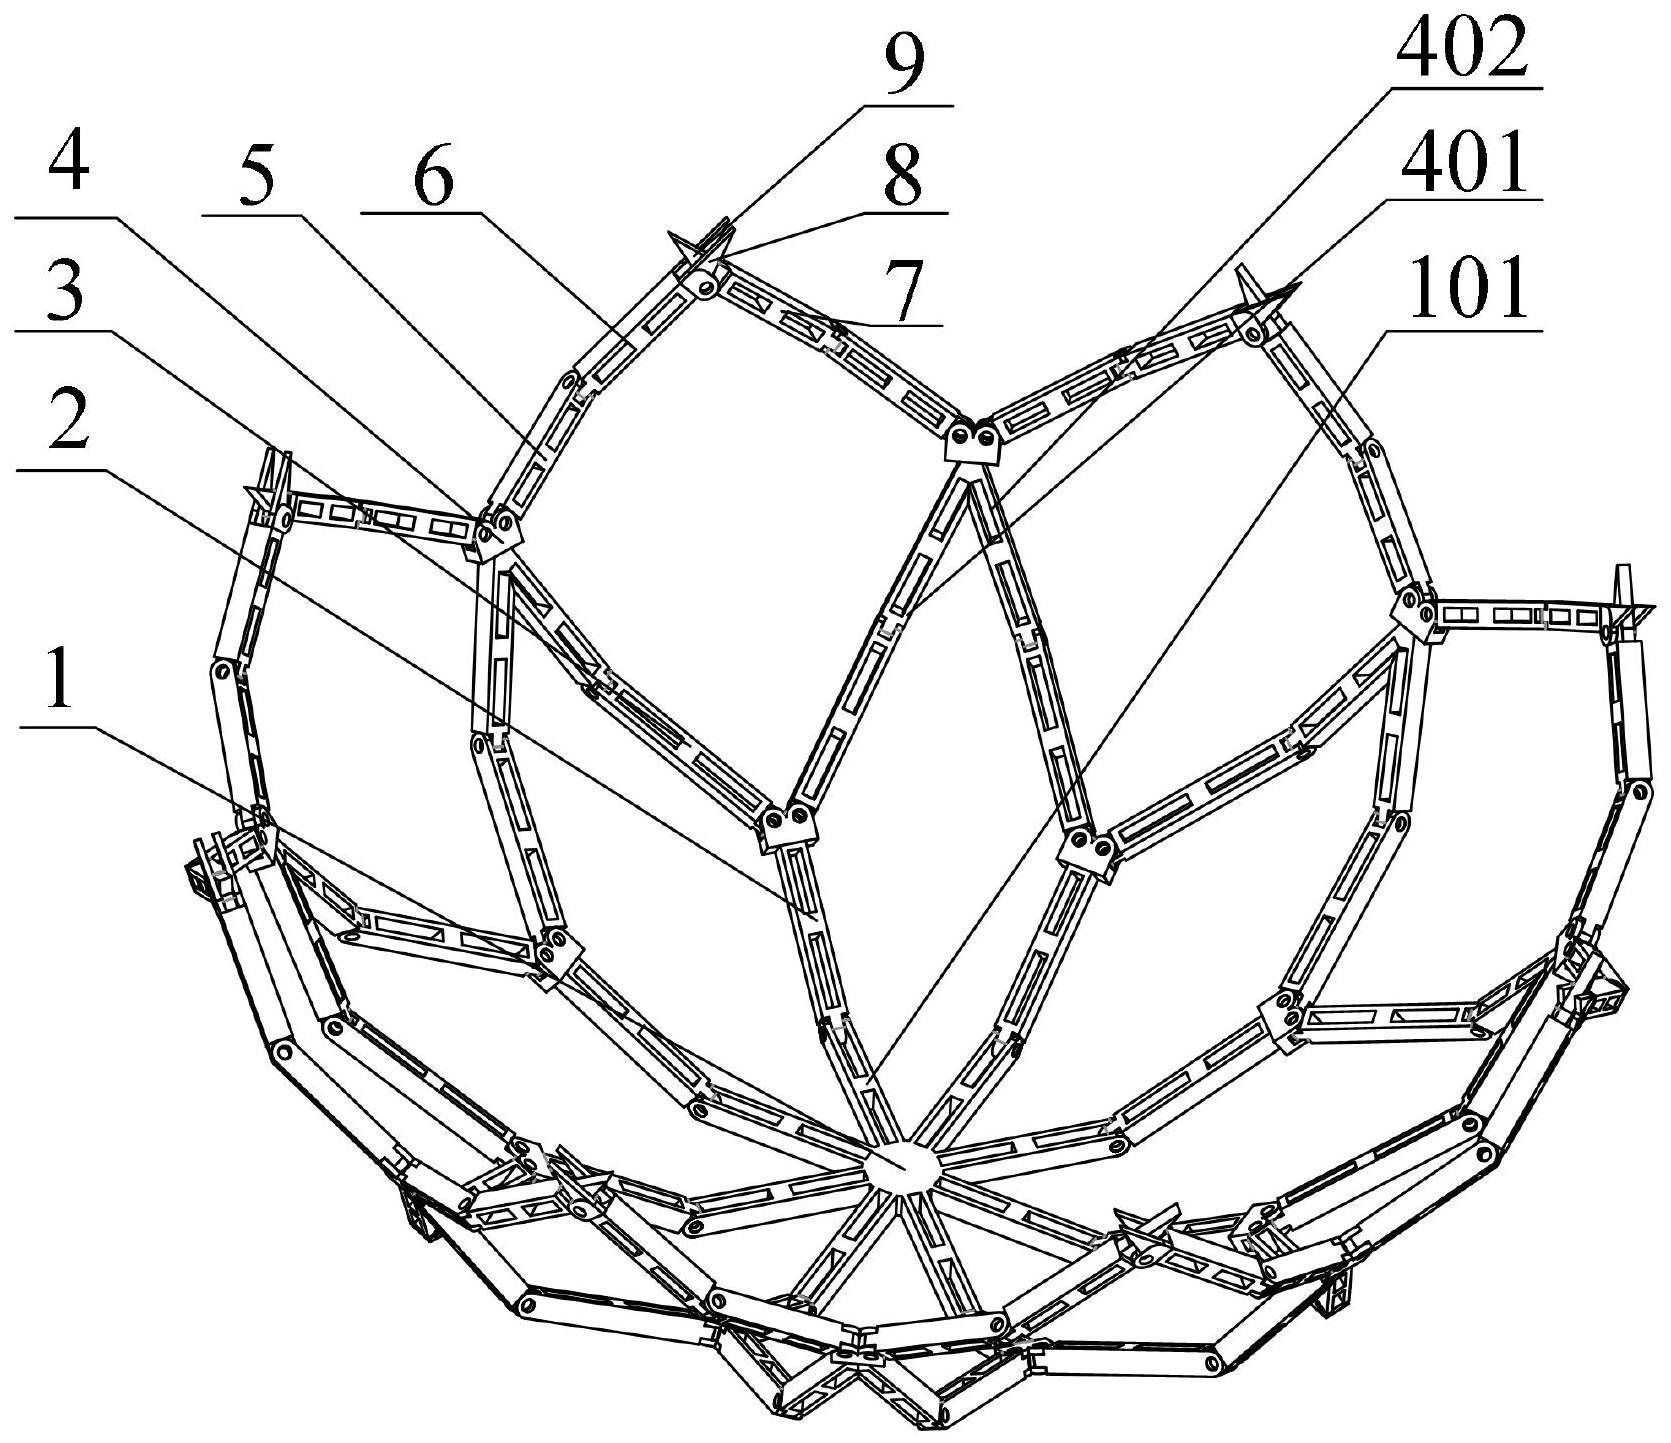 一种可实现平面正八边形/空间球状转换的单自由度折展机构